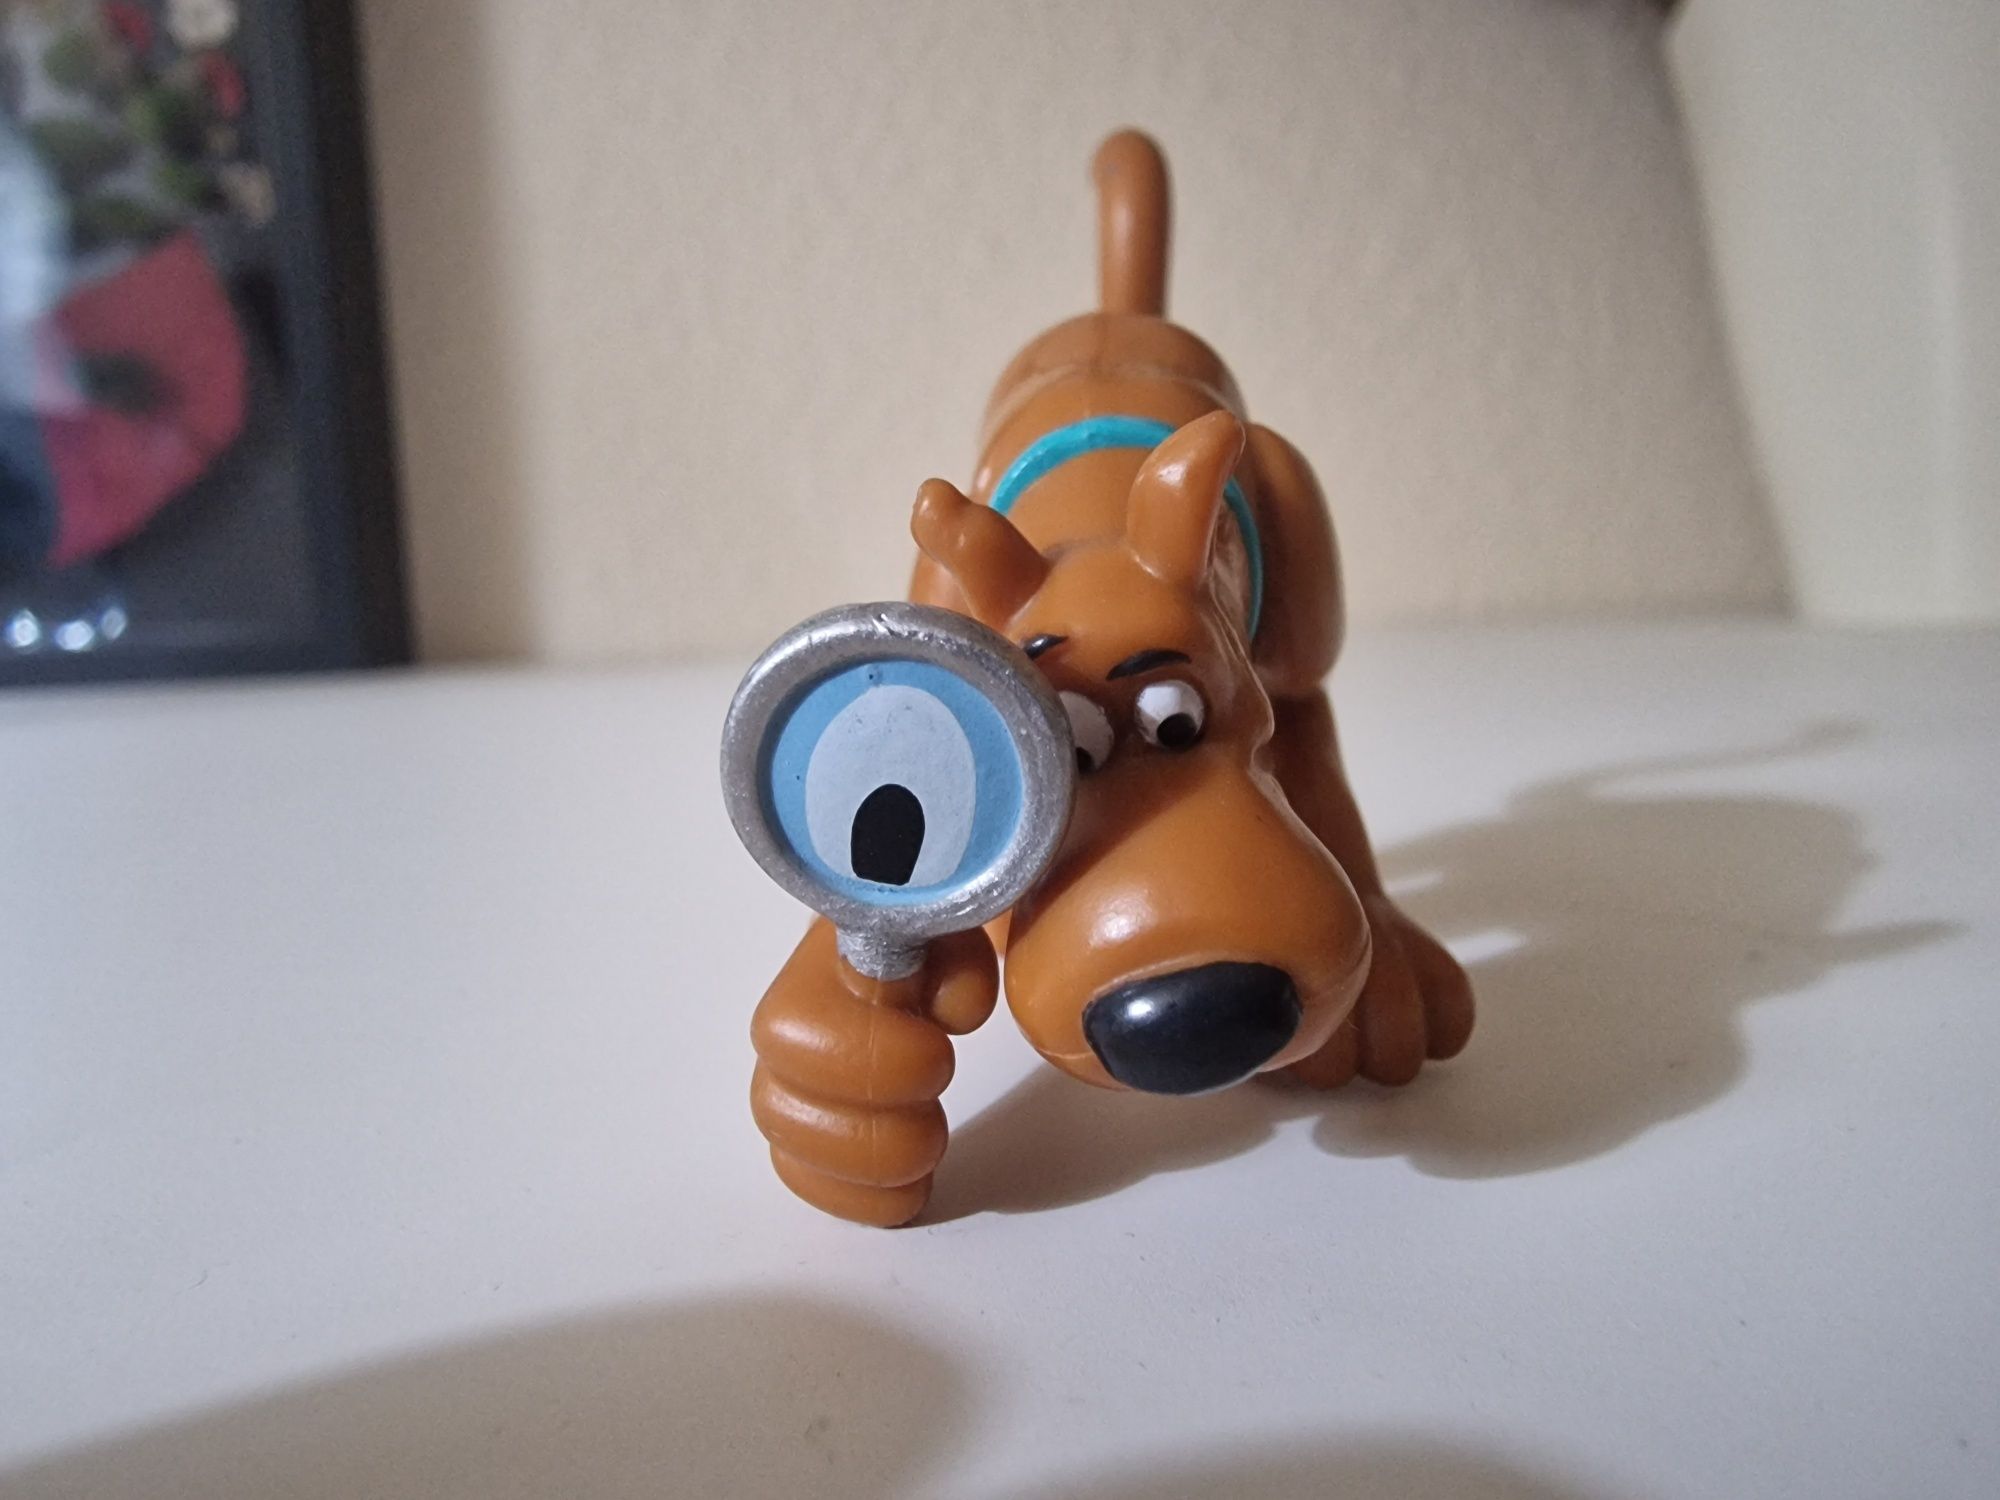 Figurka Scooby-Doo